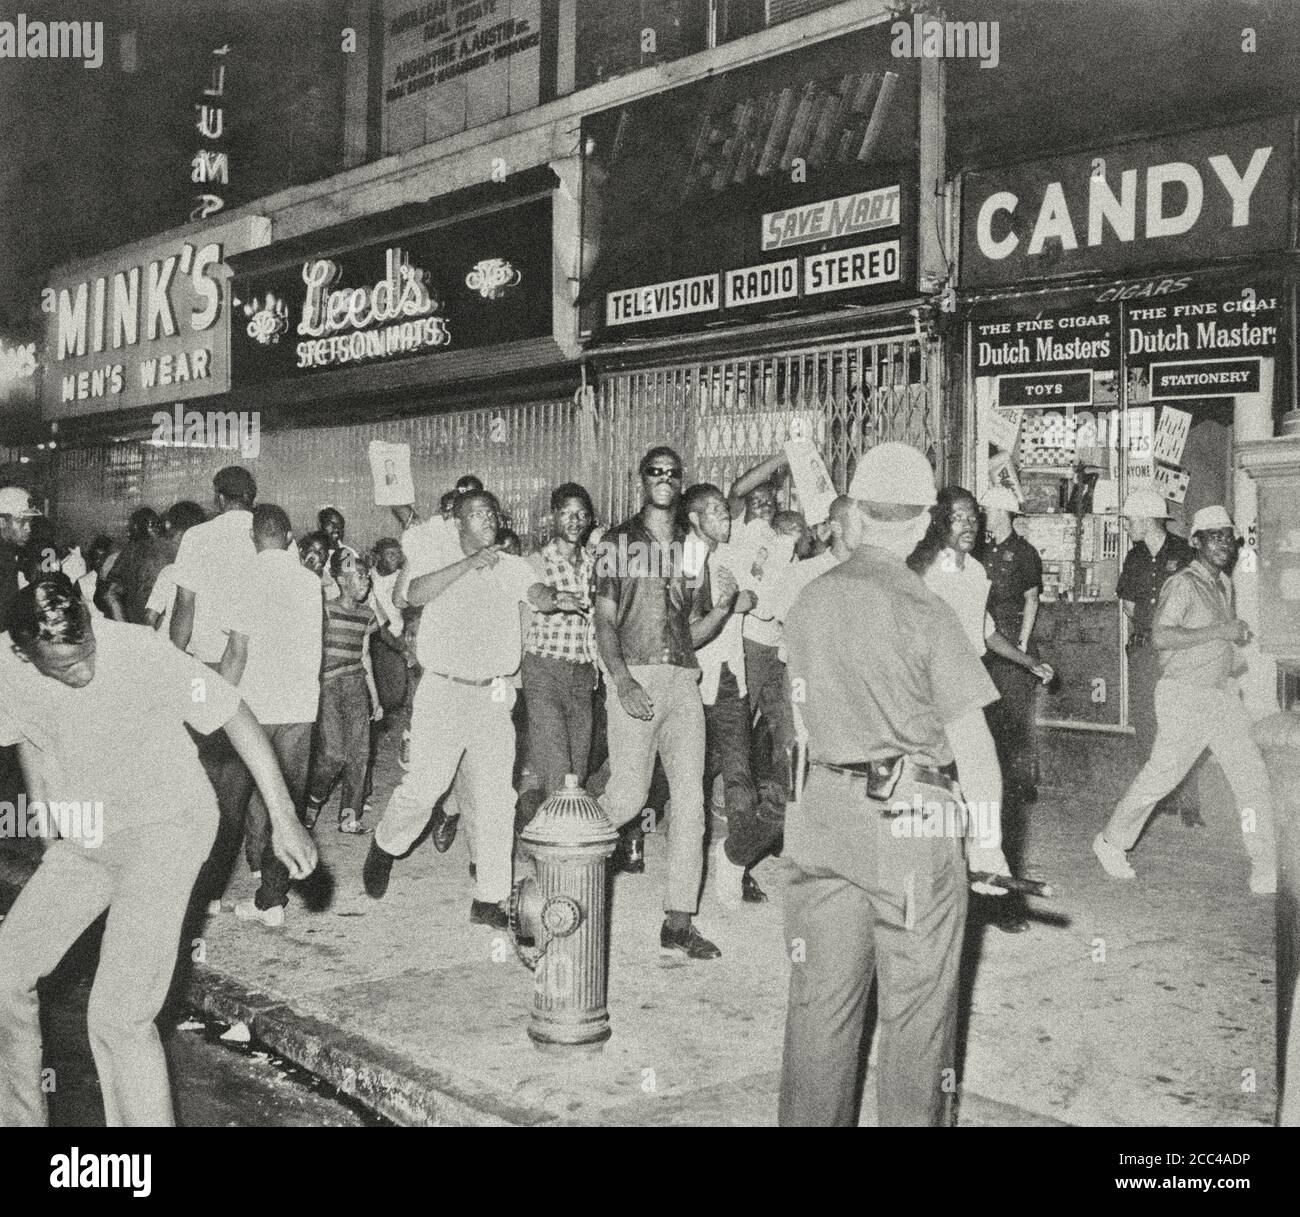 Le meurtre mortel de Powell a incité les émeutiers noirs à protester dans les rues de Harlem en montrant des photos du lieutenant Gilligan. New York, États-Unis, 1964 Banque D'Images